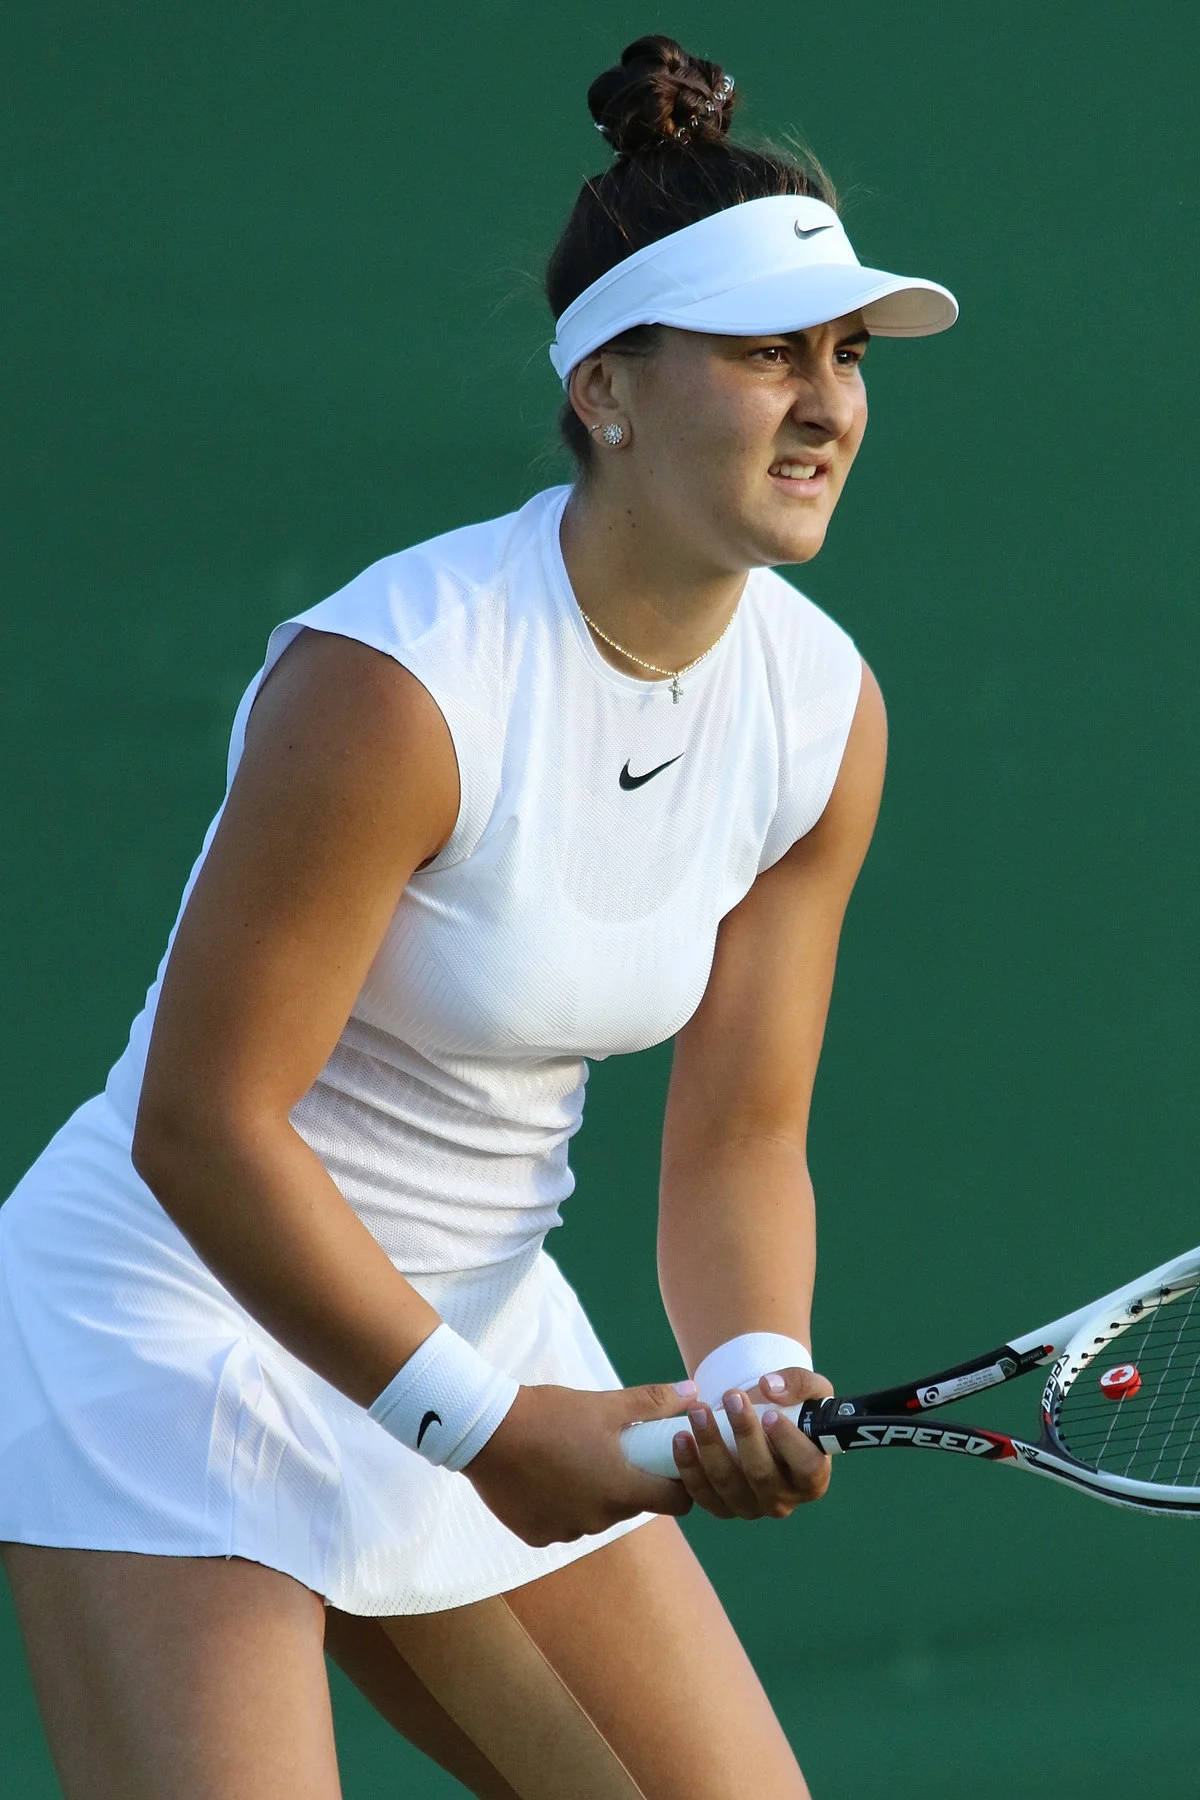 Lastar Del Tennis Canadese Bianca Andreescu In Un Abbigliamento Completamente Bianco. Sfondo